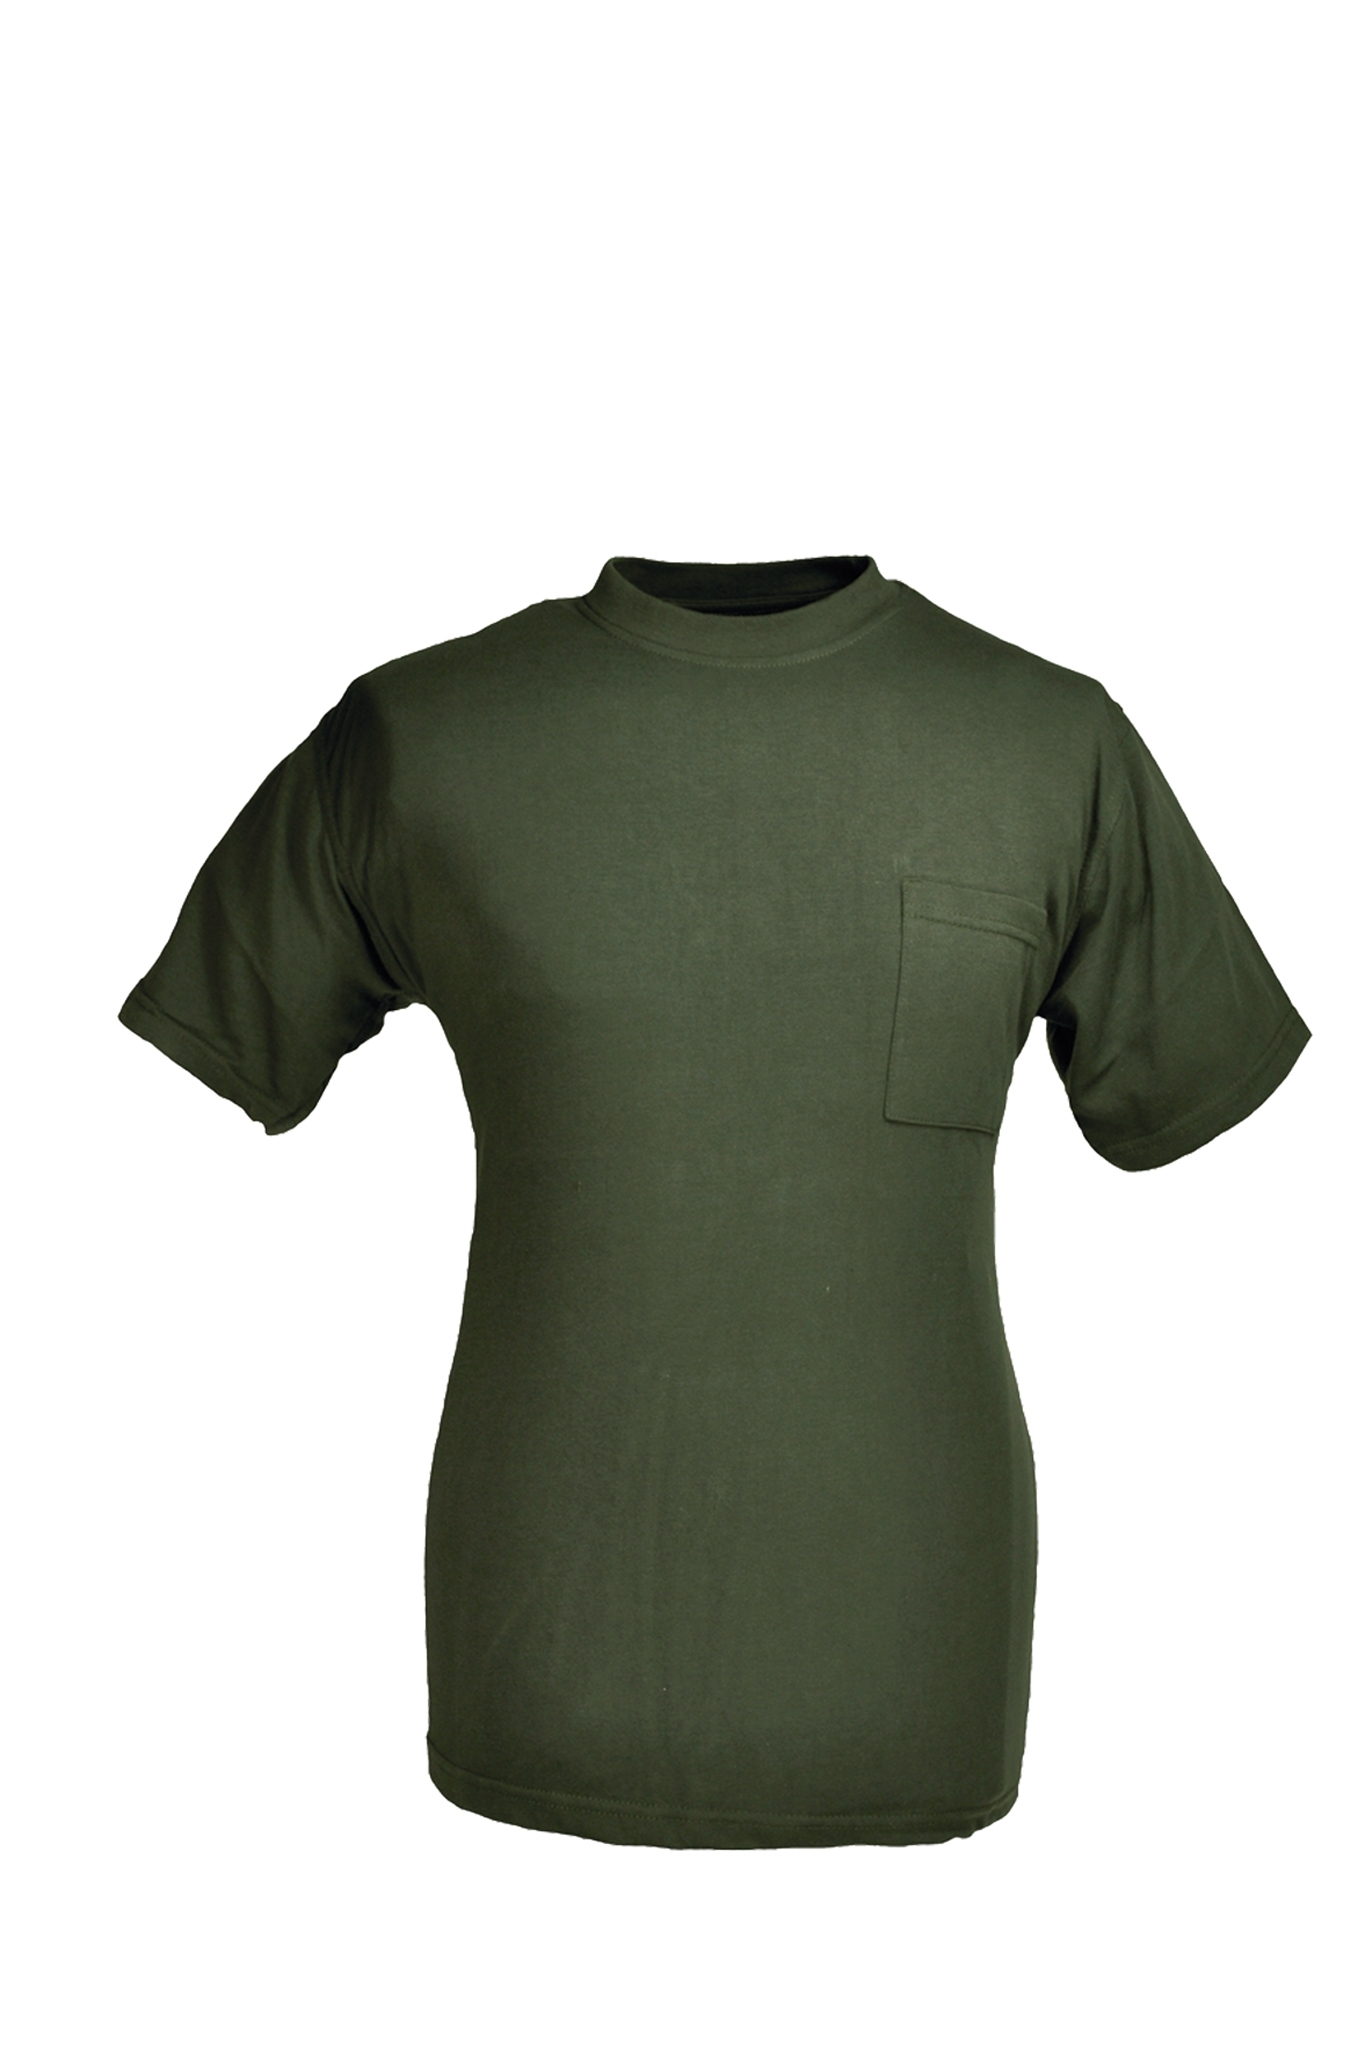 Rundhals T-Shirt oliv Gr.7XL 10227843